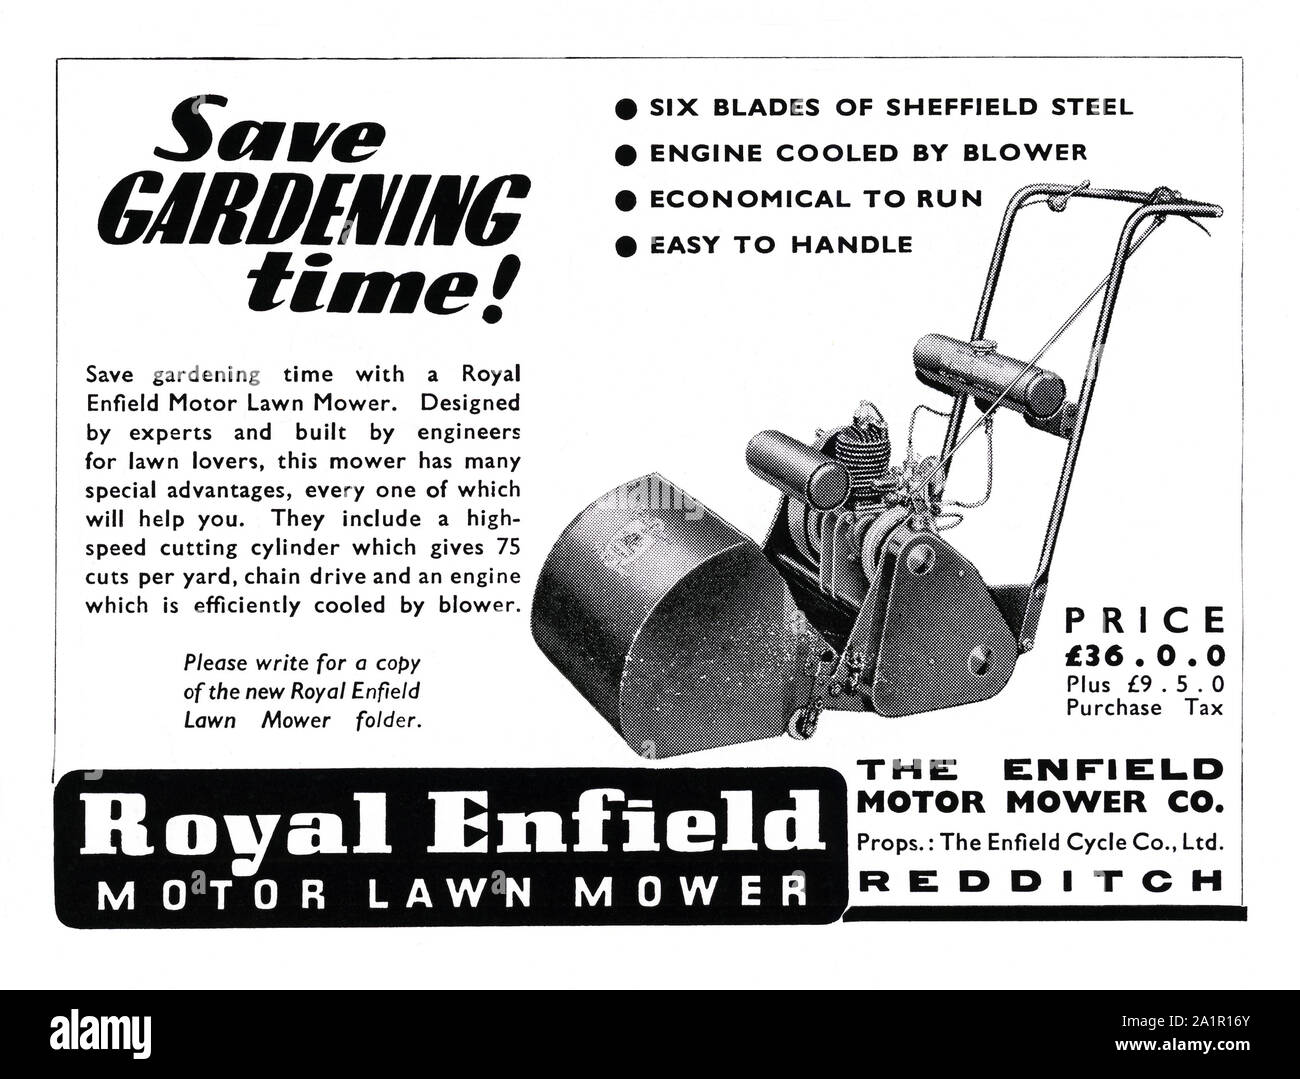 Anzeige für Royal Enfield motor Rasenmäher, 1951, betonen seine Zeit sparende möglichkeit im Garten. Royal Enfield war ein Markenname, unter dem das Enfield Cycle Company Limited von Redditch, Worcestershire hergestellt und verkauft Motorräder, Fahrräder, Rasenmäher und Stationärmotoren. Stockfoto